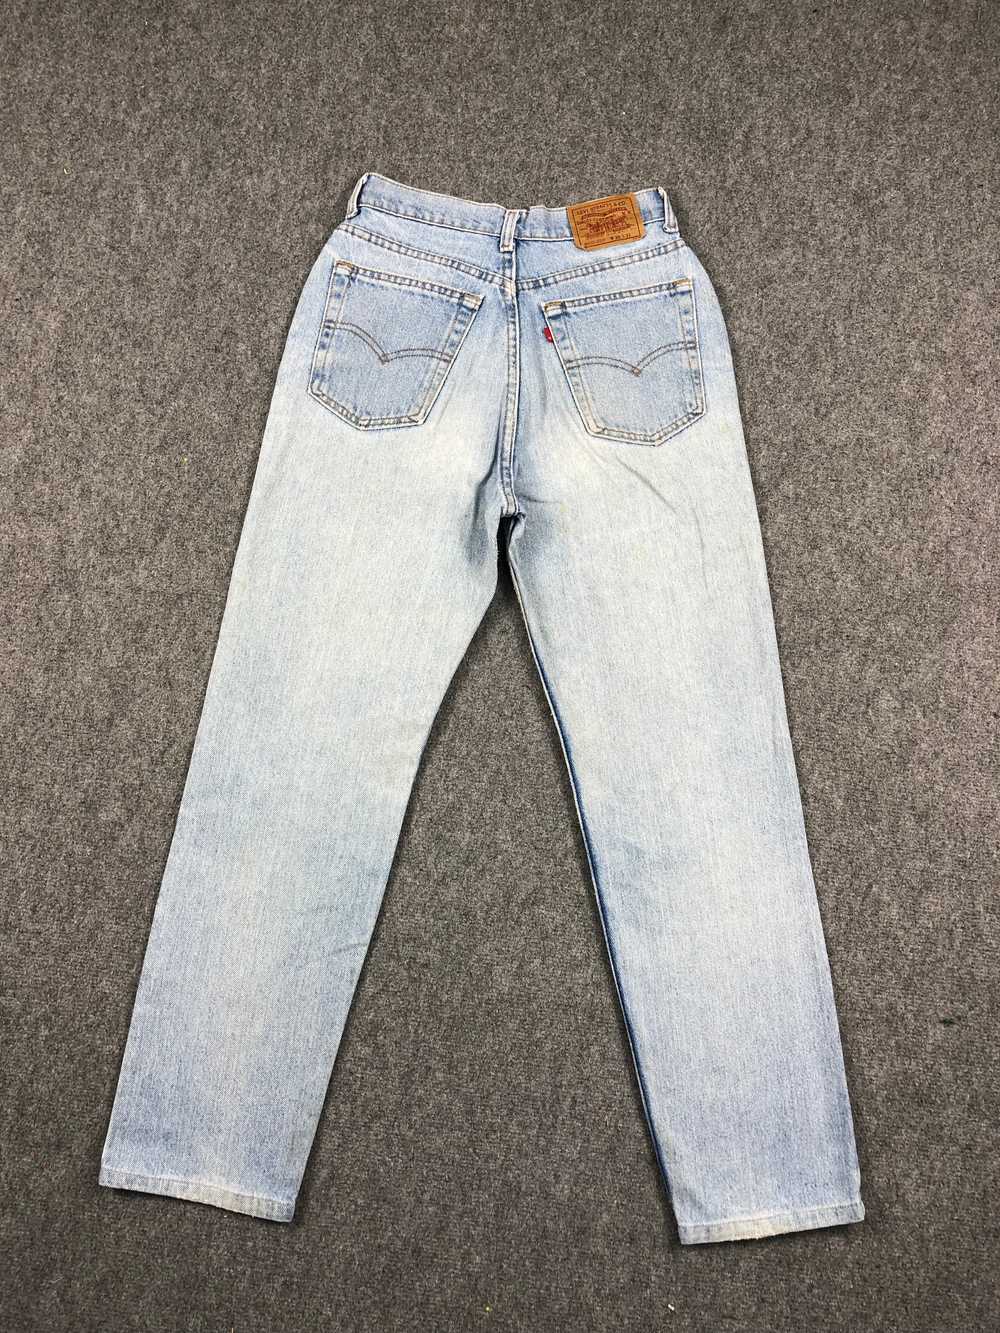 Vintage - Vintage 90s Levis 510 Light Wash Jeans - image 3